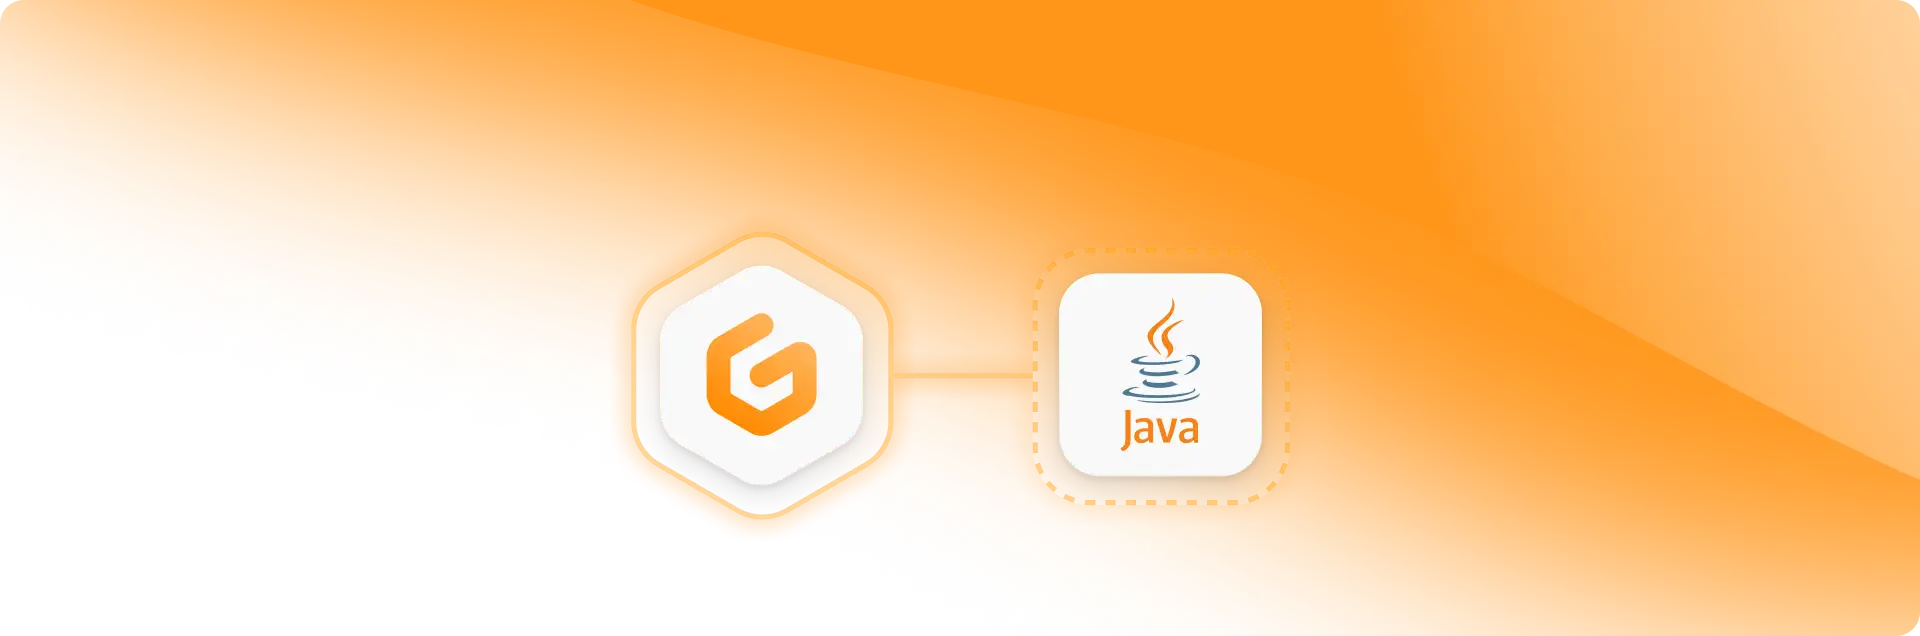 How to use a custom Java distribution on Gitpod